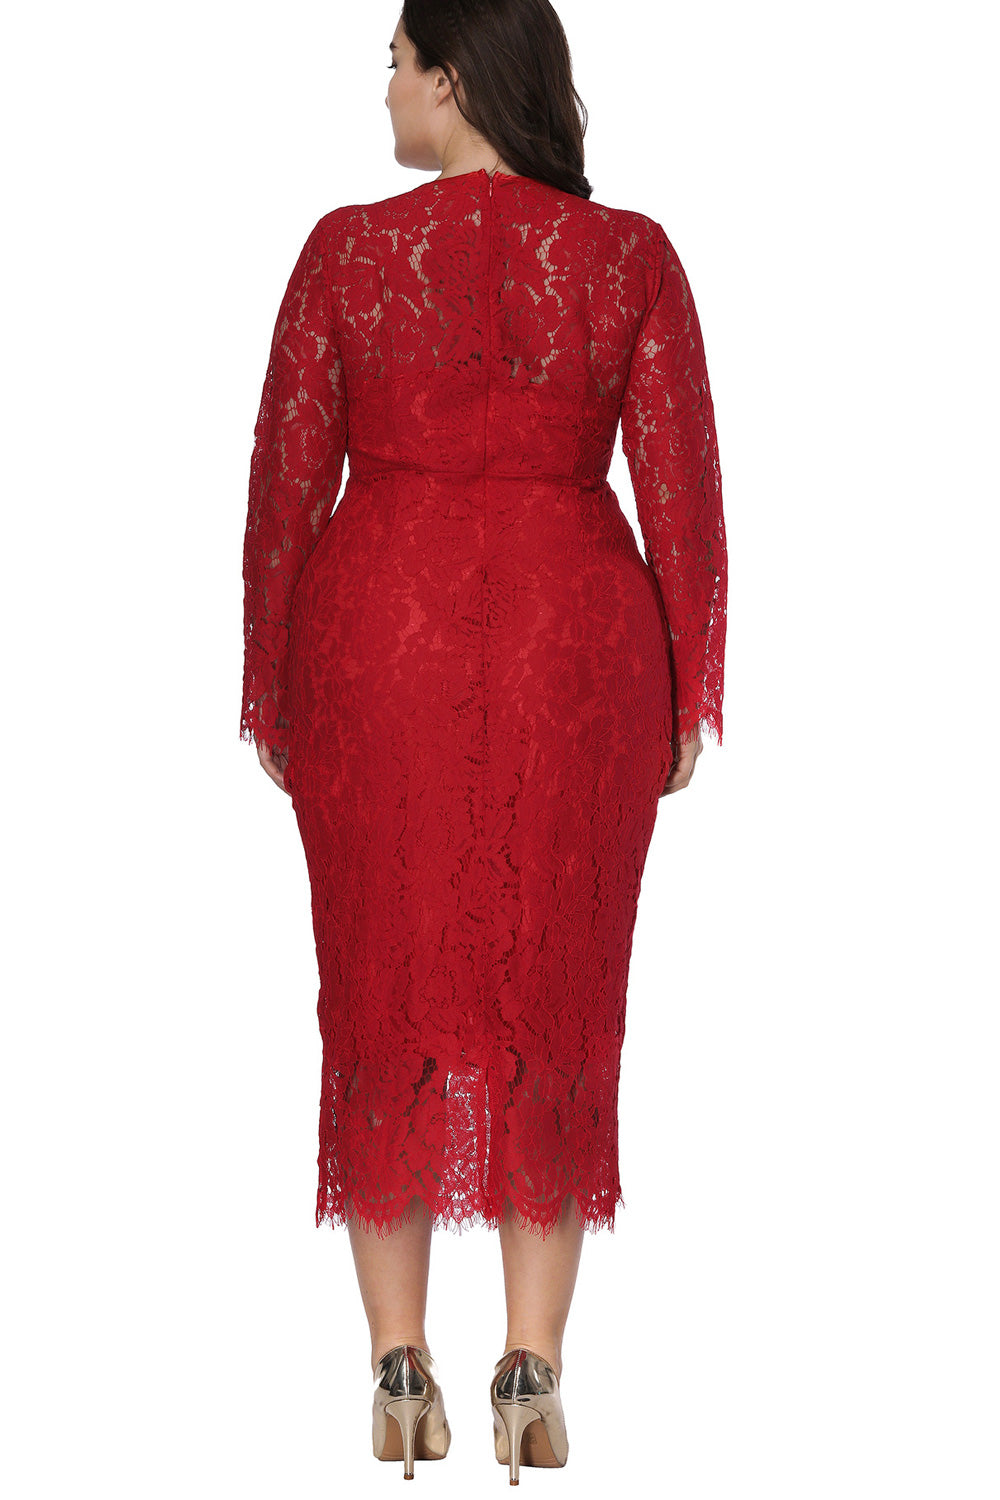 Ketty More Women Plus Size Elegant Style Party Dress-KMWD124